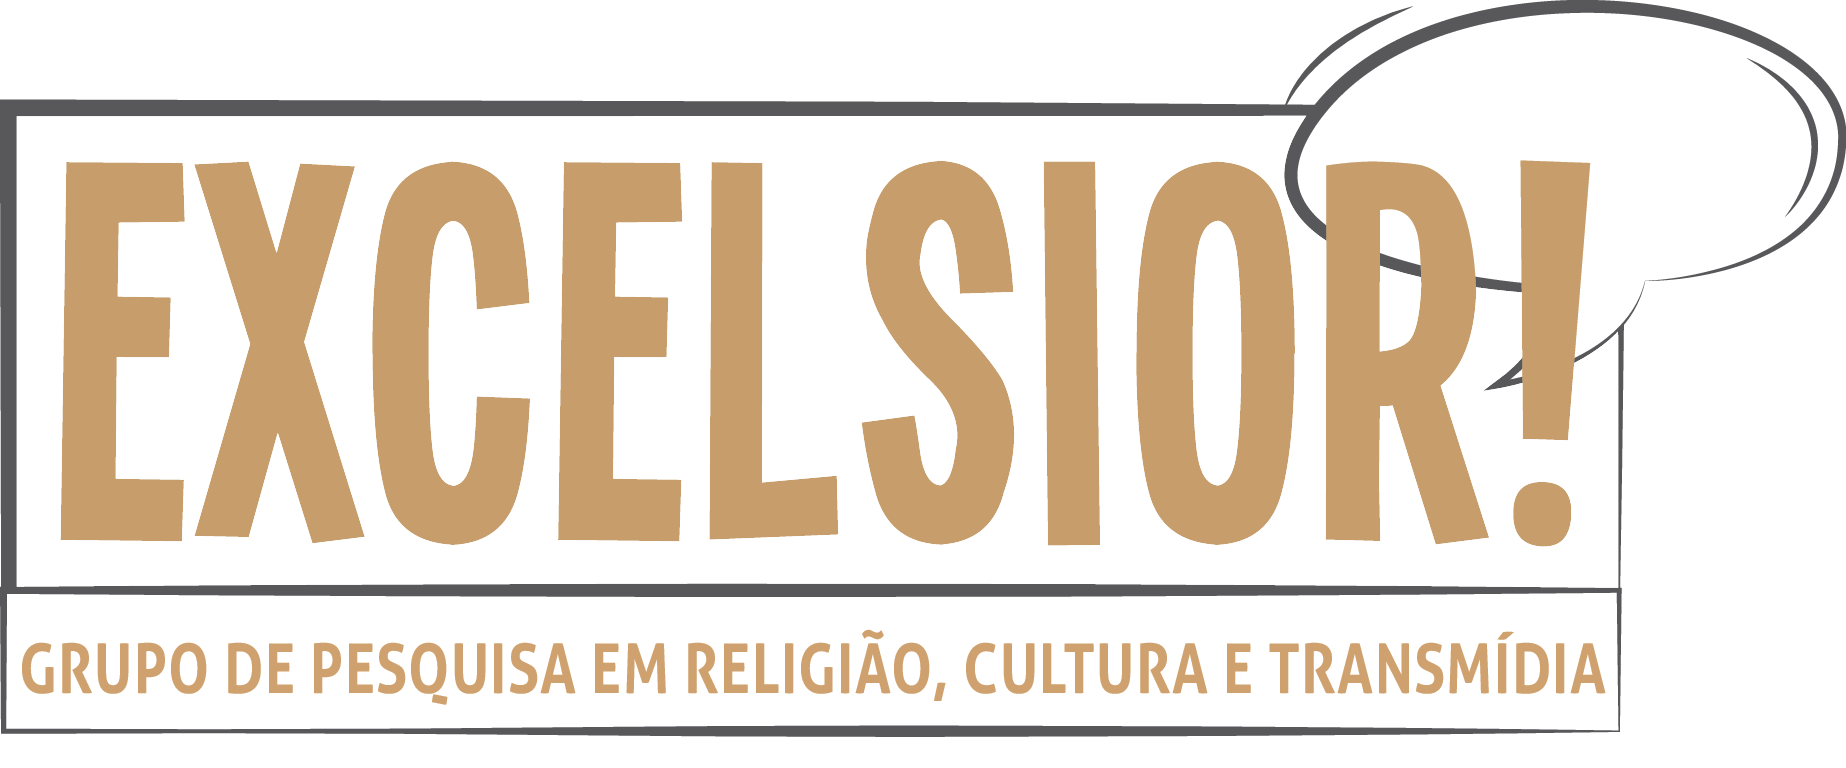 logo-excelsior